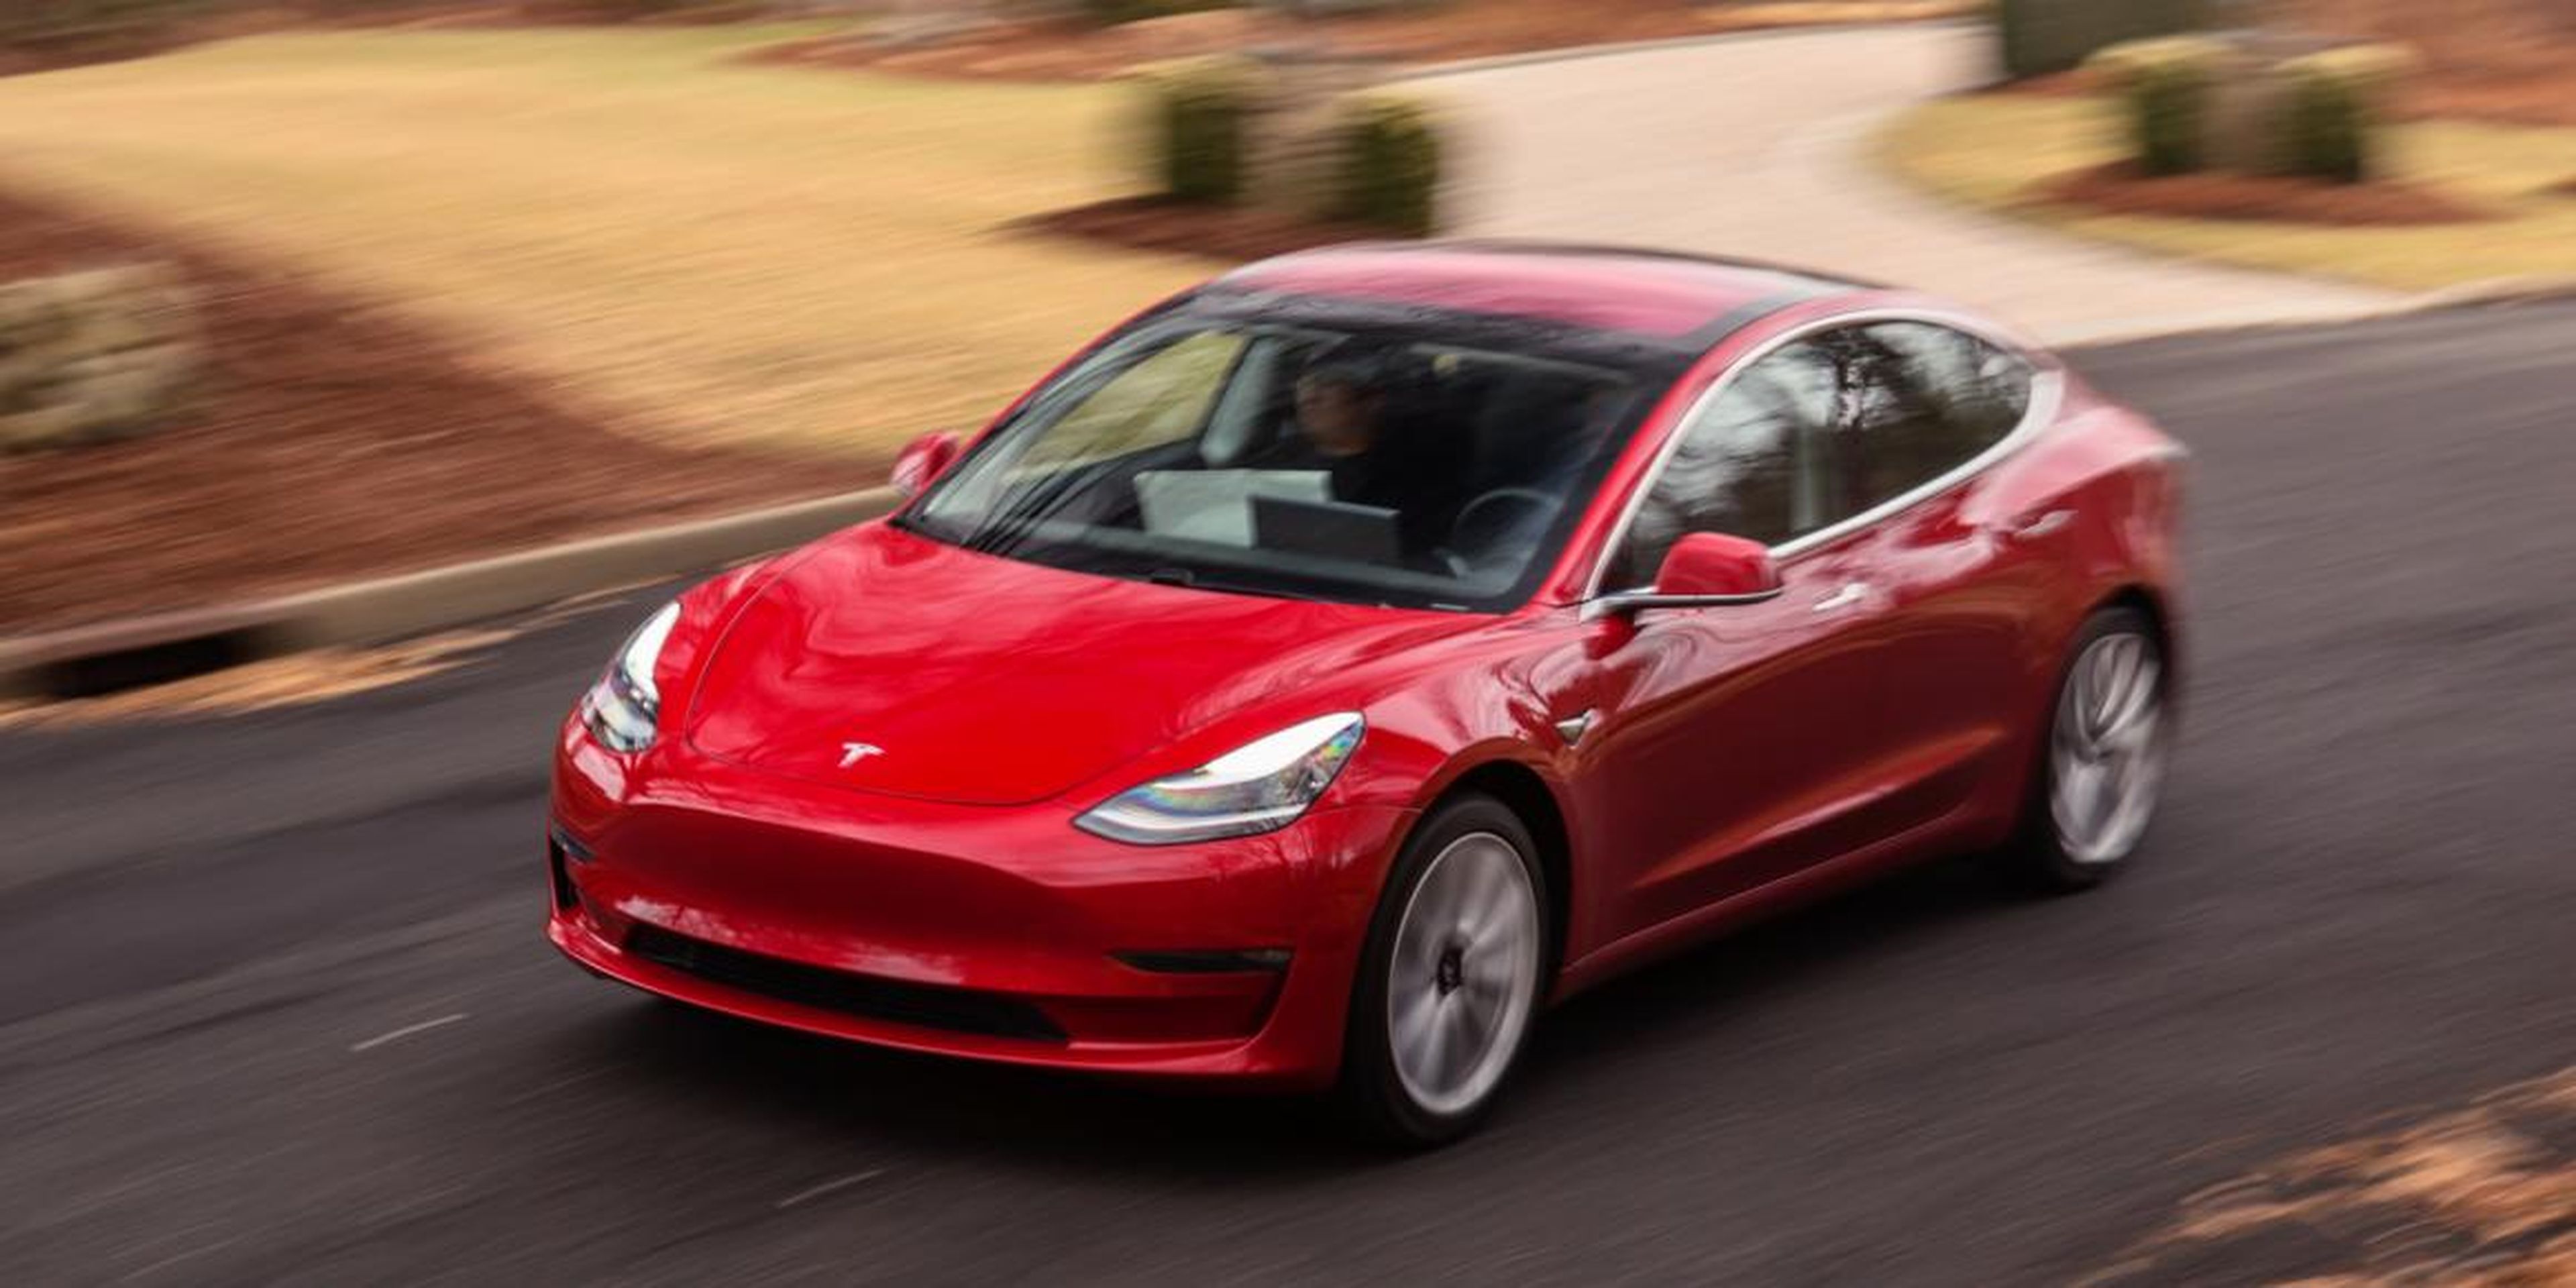 Al Tesla Model 3 no le fue excesivamente bien en la prueba.